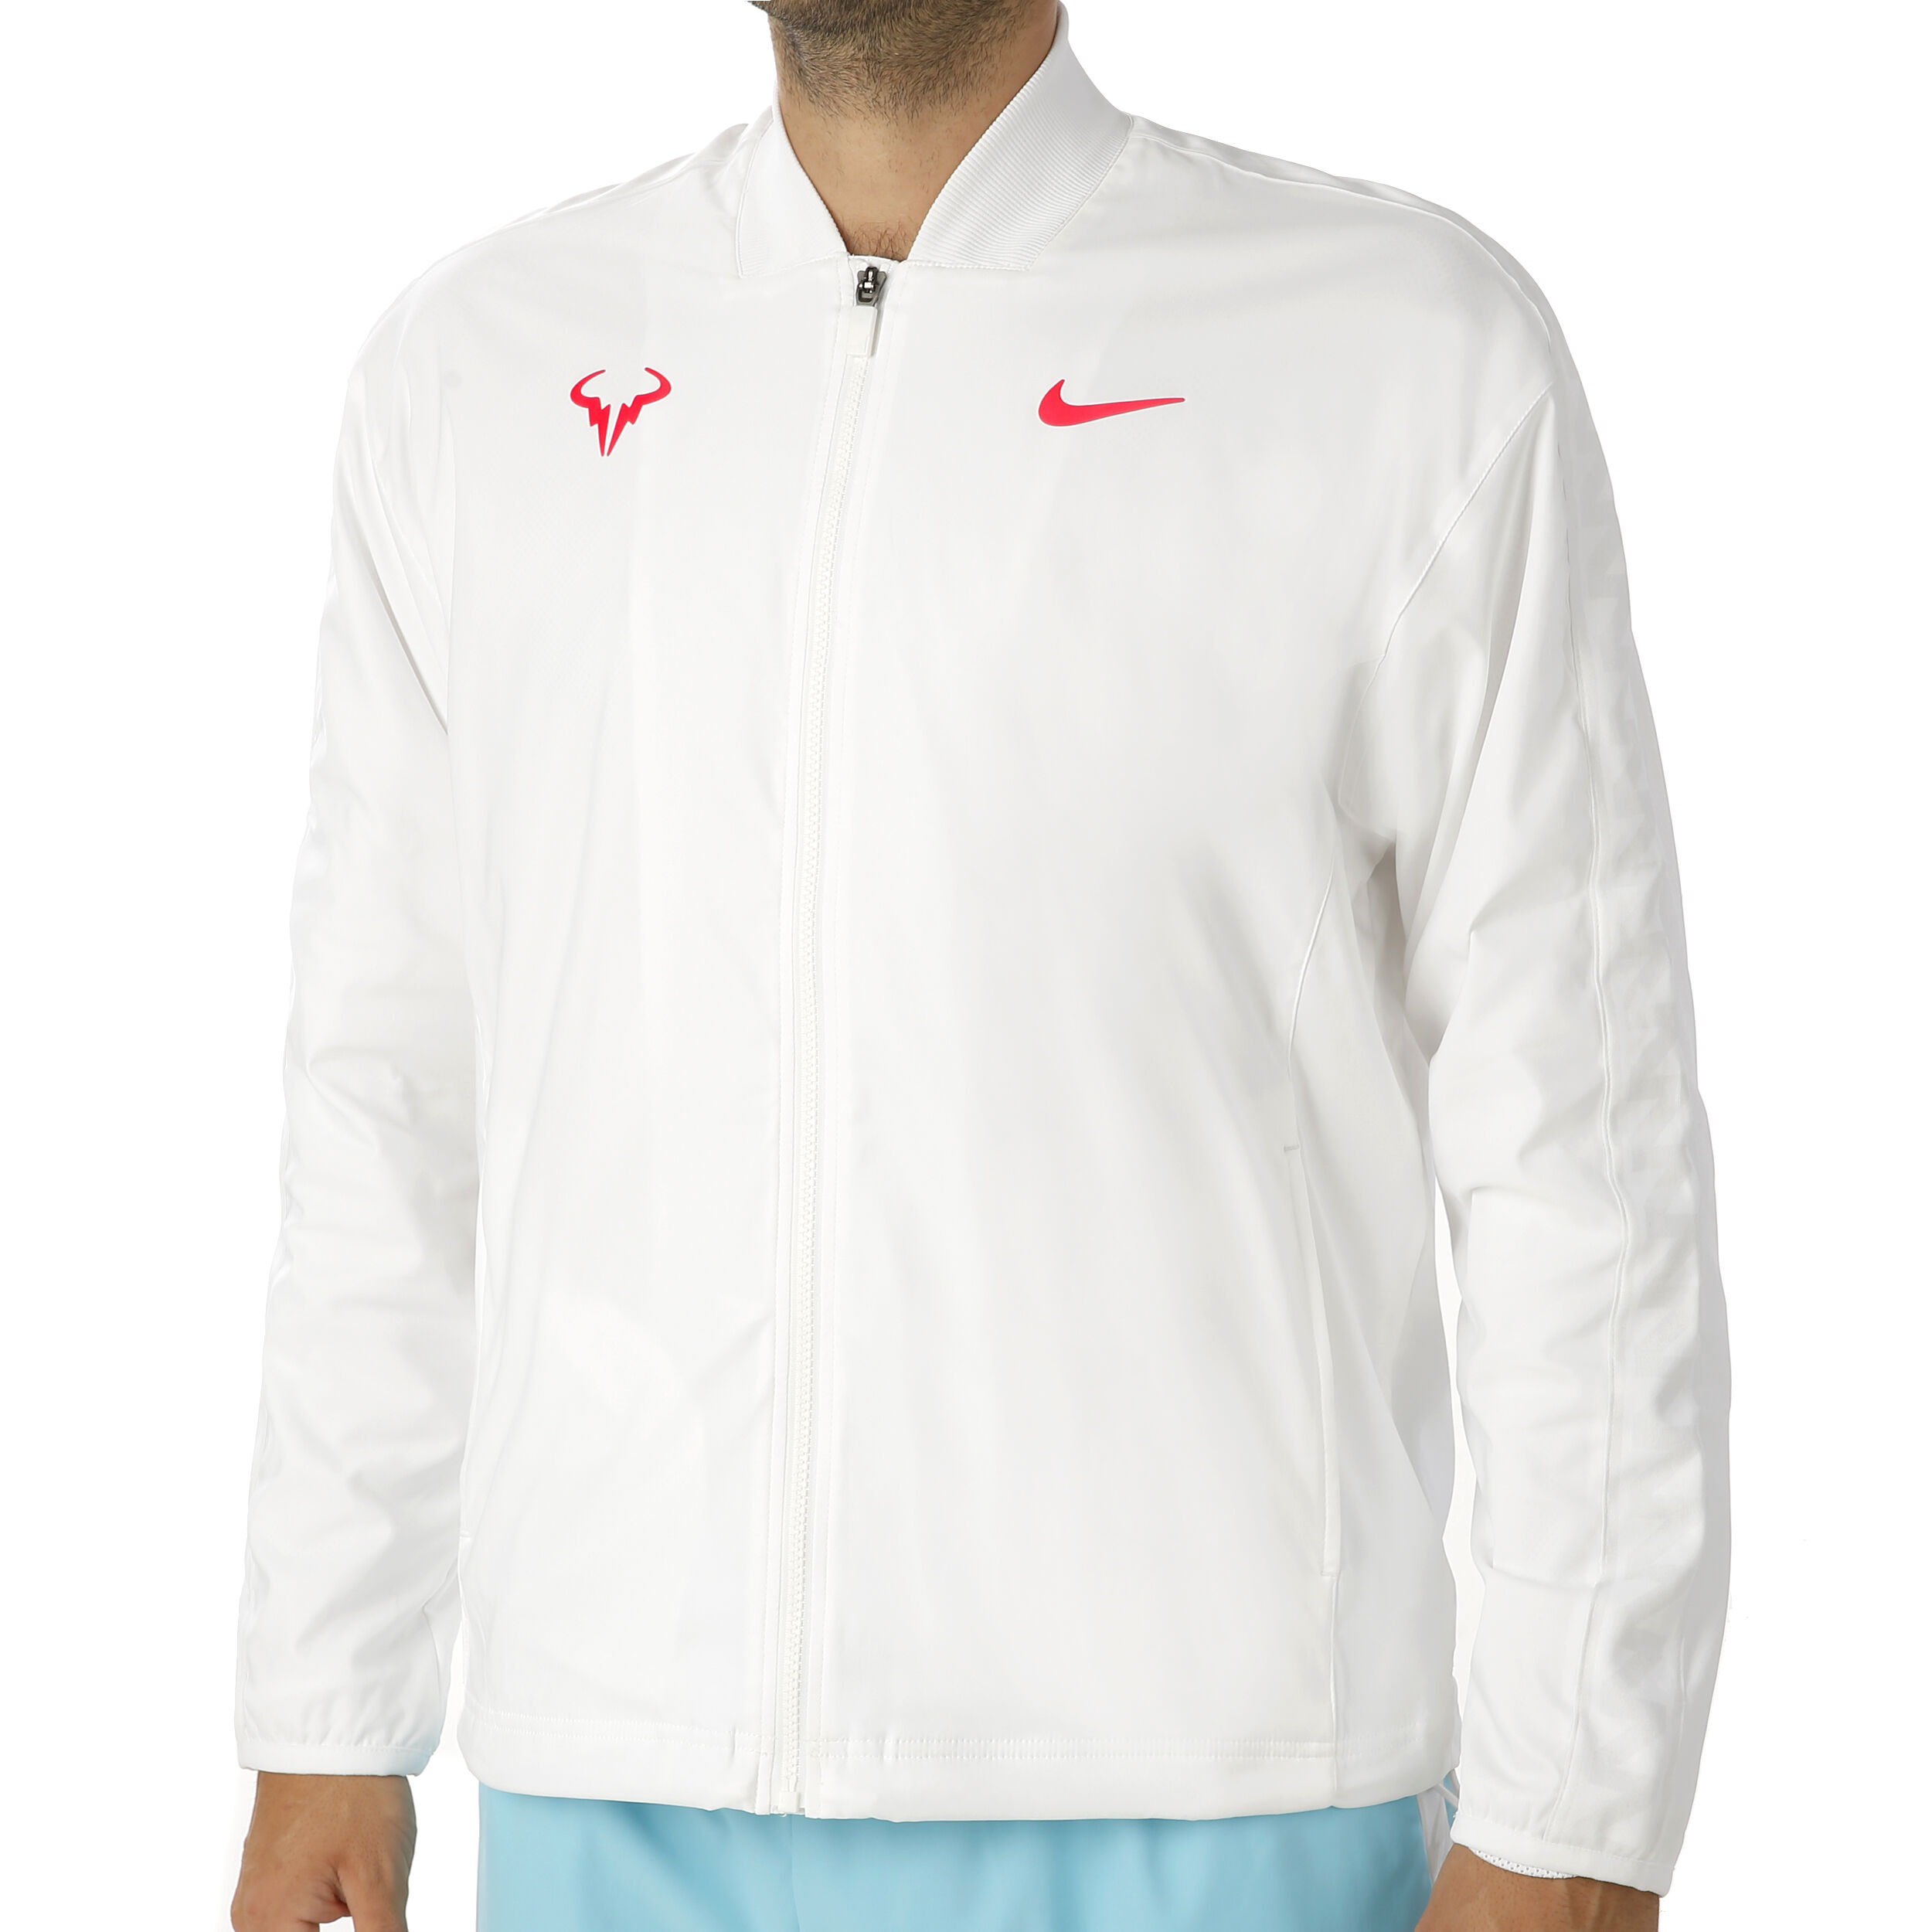 Rafael Nadal Training Jacket Men - White, Neon Red